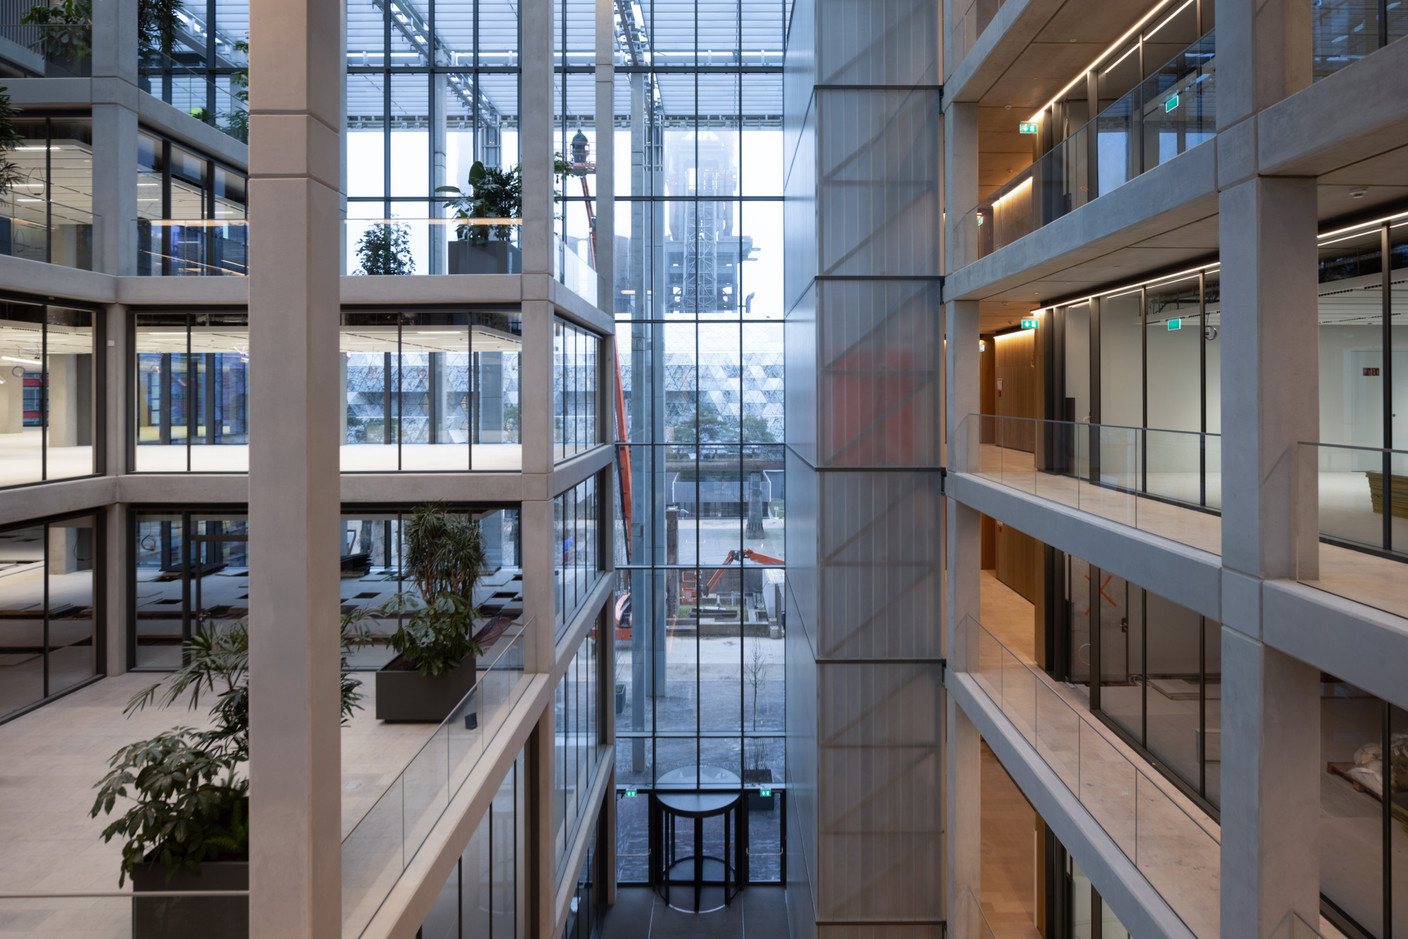 Les façades entièrement vitrées permettent d’avoir une connexion visuelle avec l’extérieur. (Photo: Guy Wolff/Maison Moderne)